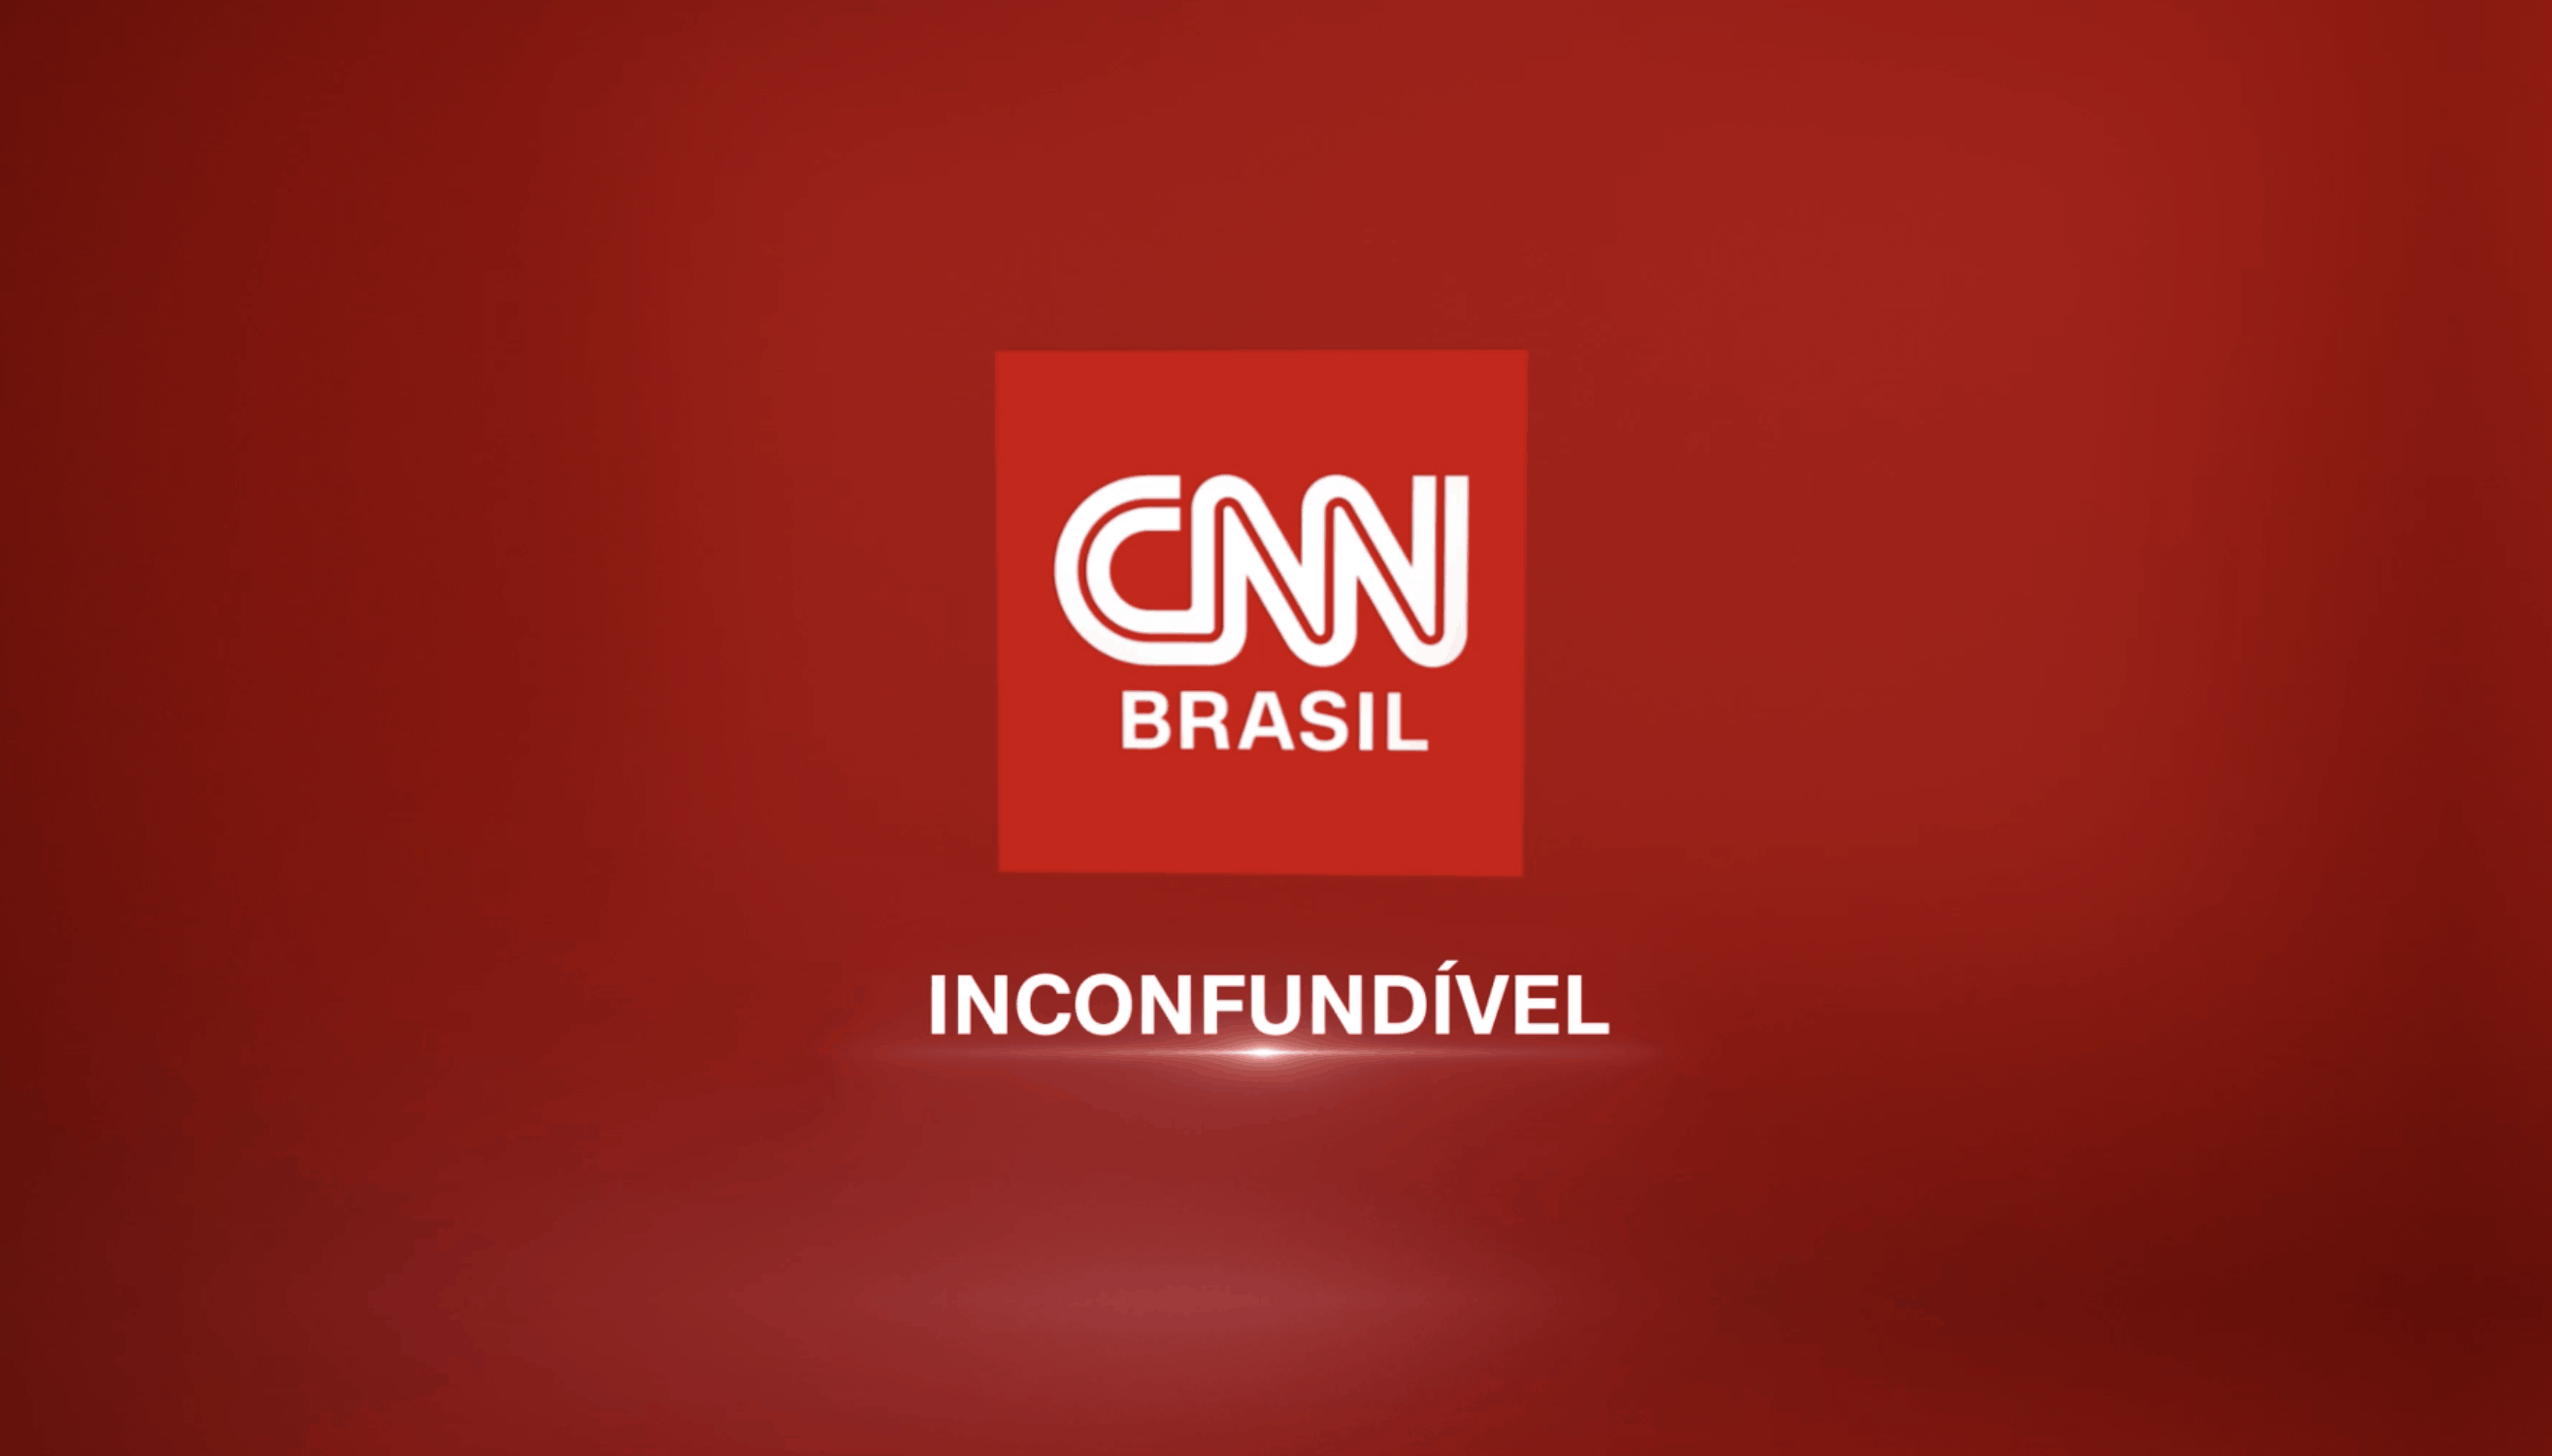 Após acerto do SBT, CNN Brasil quer Libertadores na TV paga